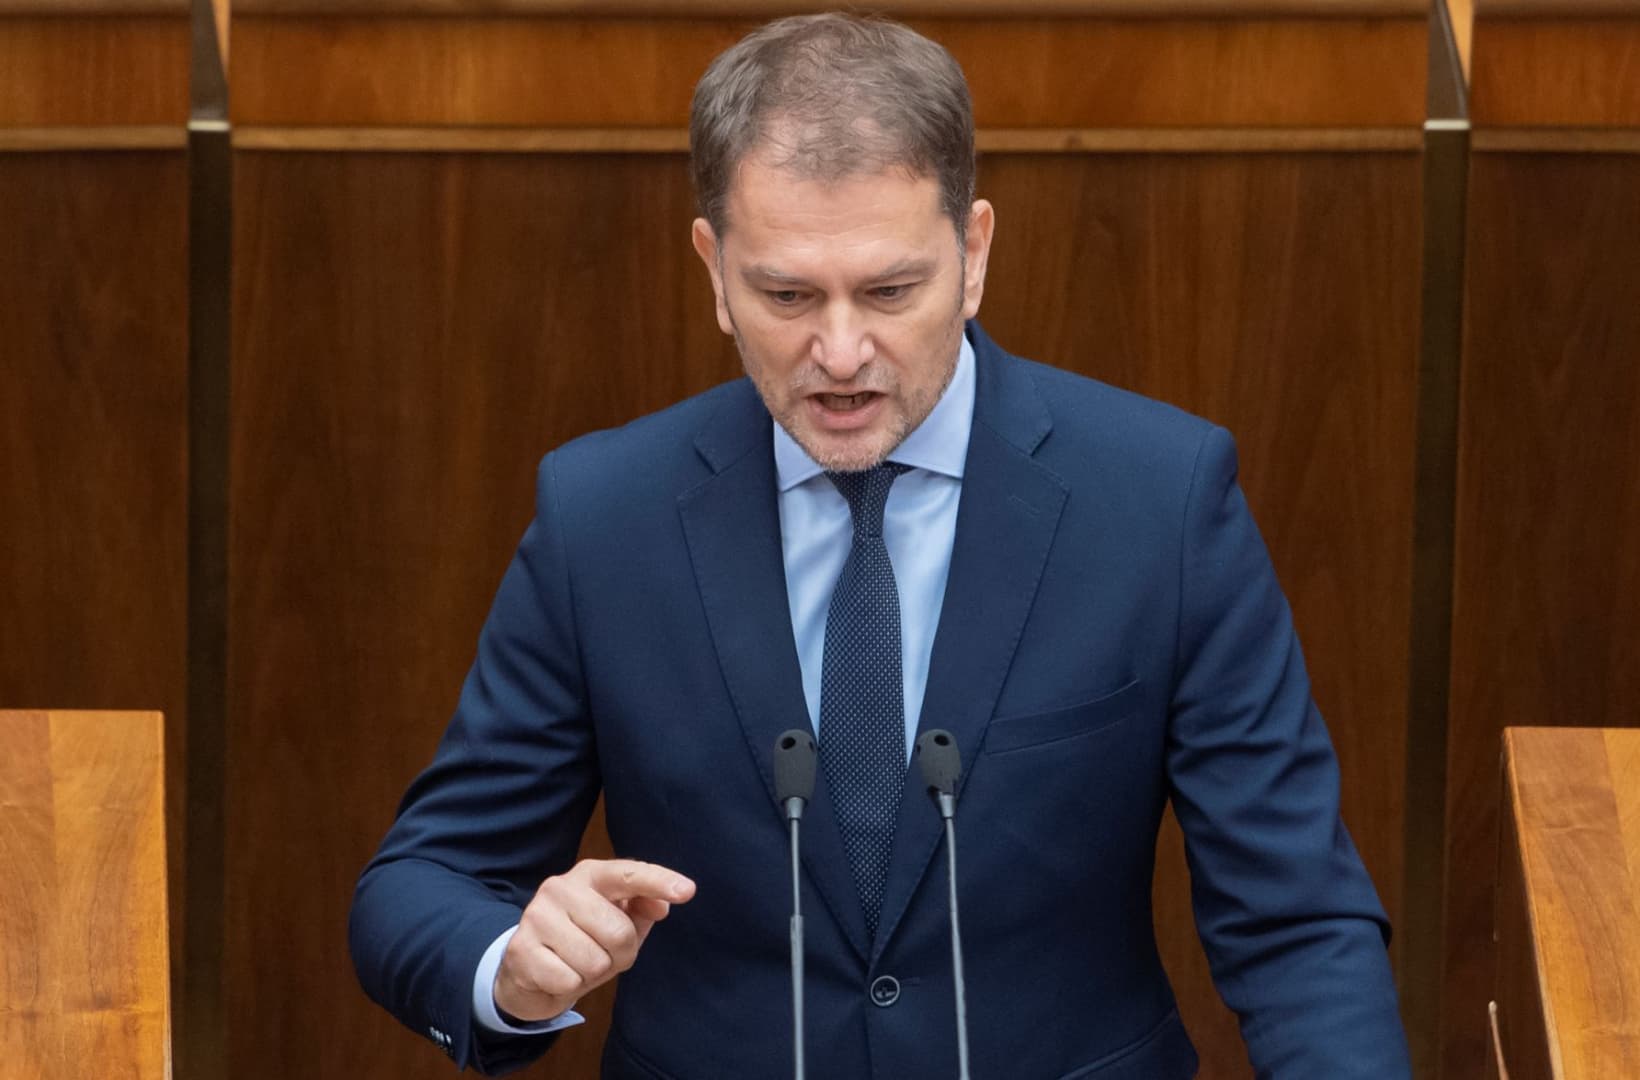 Matovič nem bírta befejezni időben a „védőbeszédét”, a leváltásáról várhatóan csak este szavaz a parlament